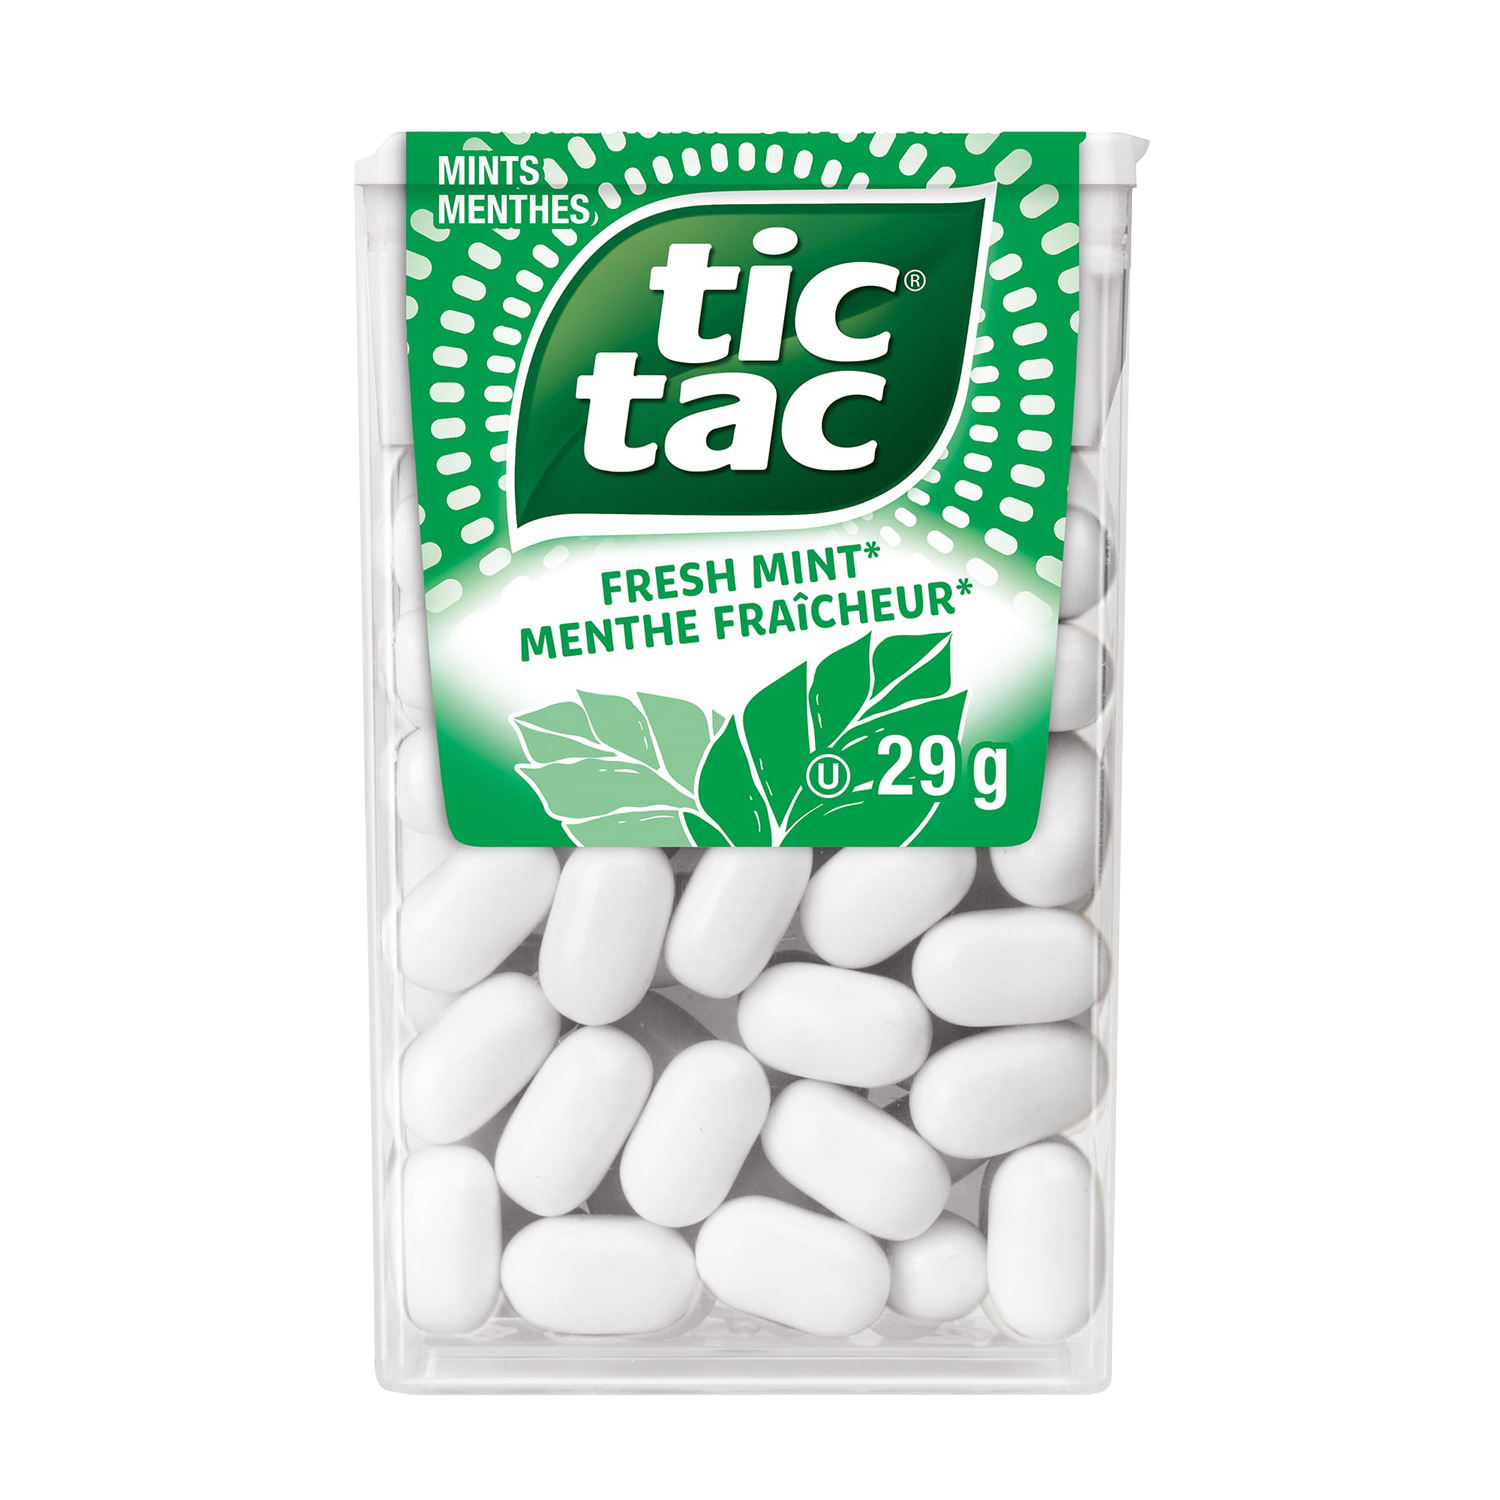 tic tac - Mint candy, 29g - Fresh Mint